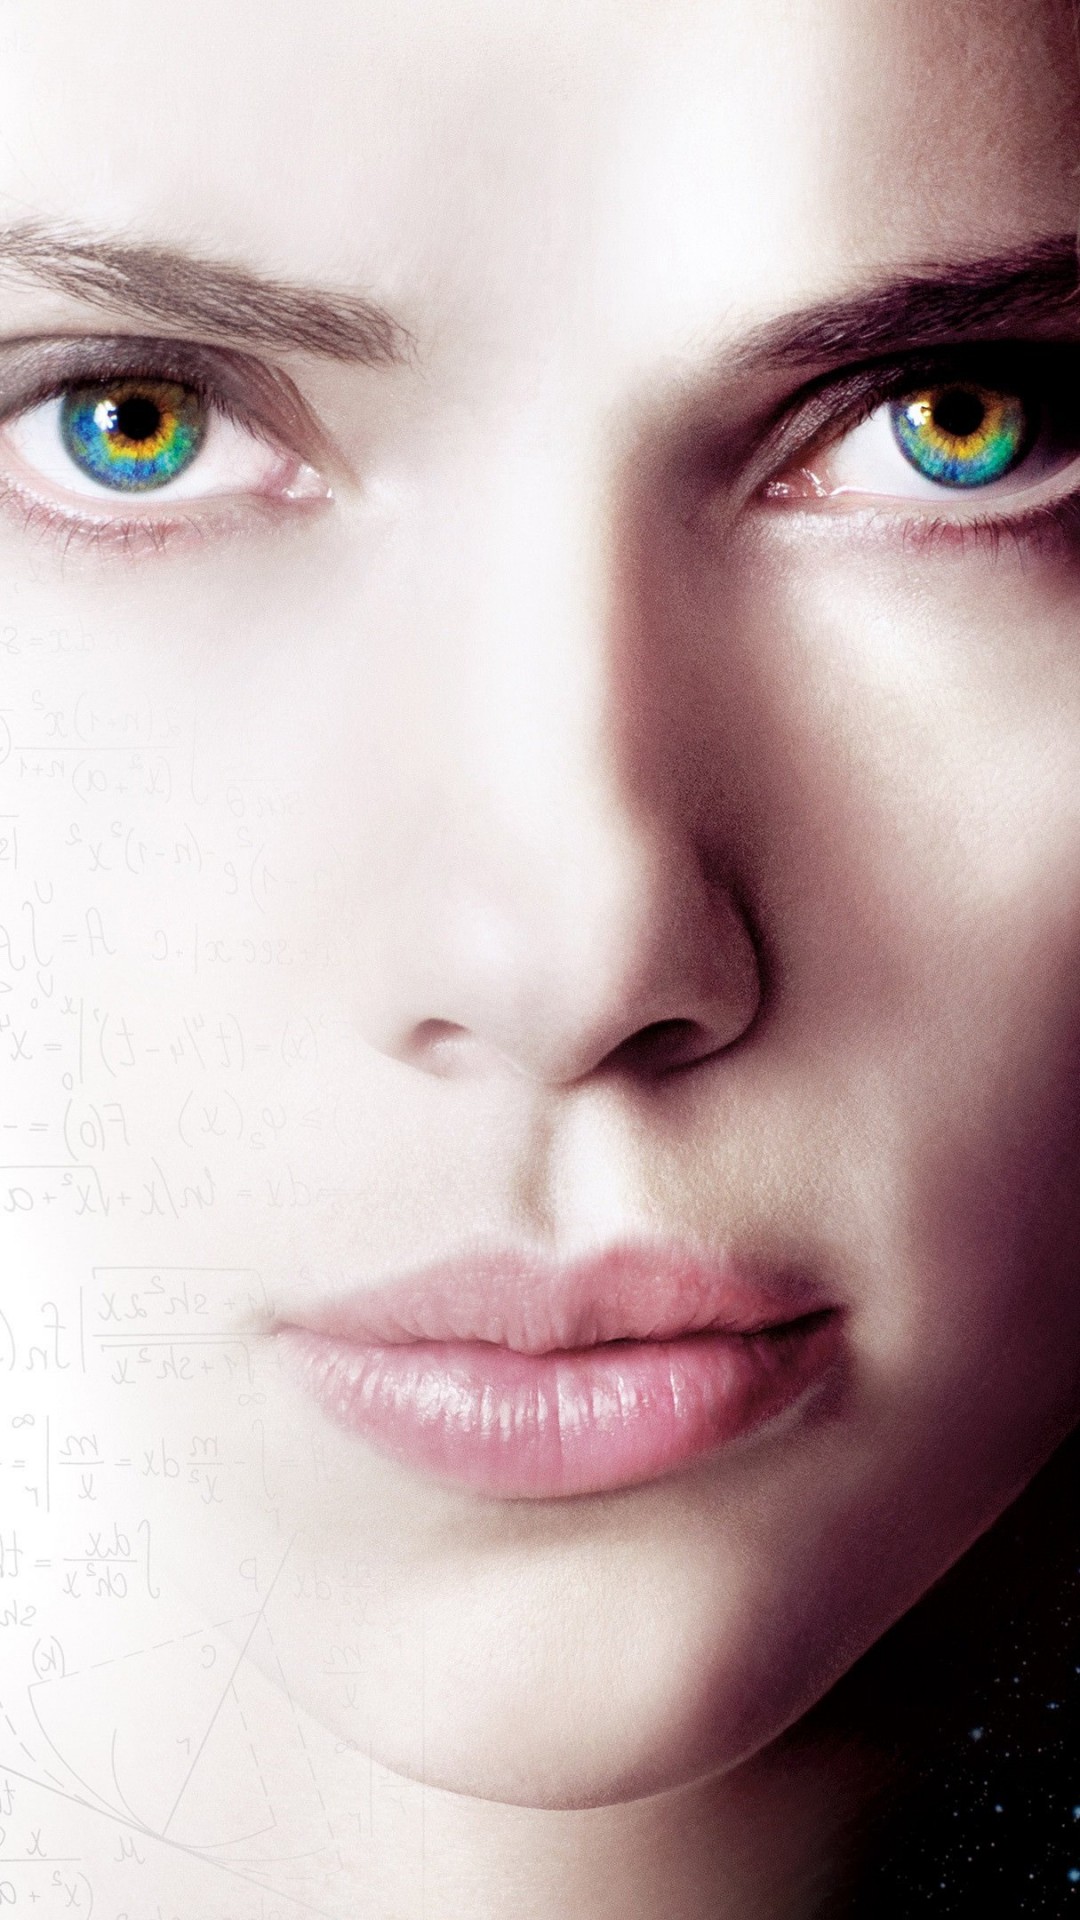 Scarlett Johansson As Lucy Wallpaper for LG G2